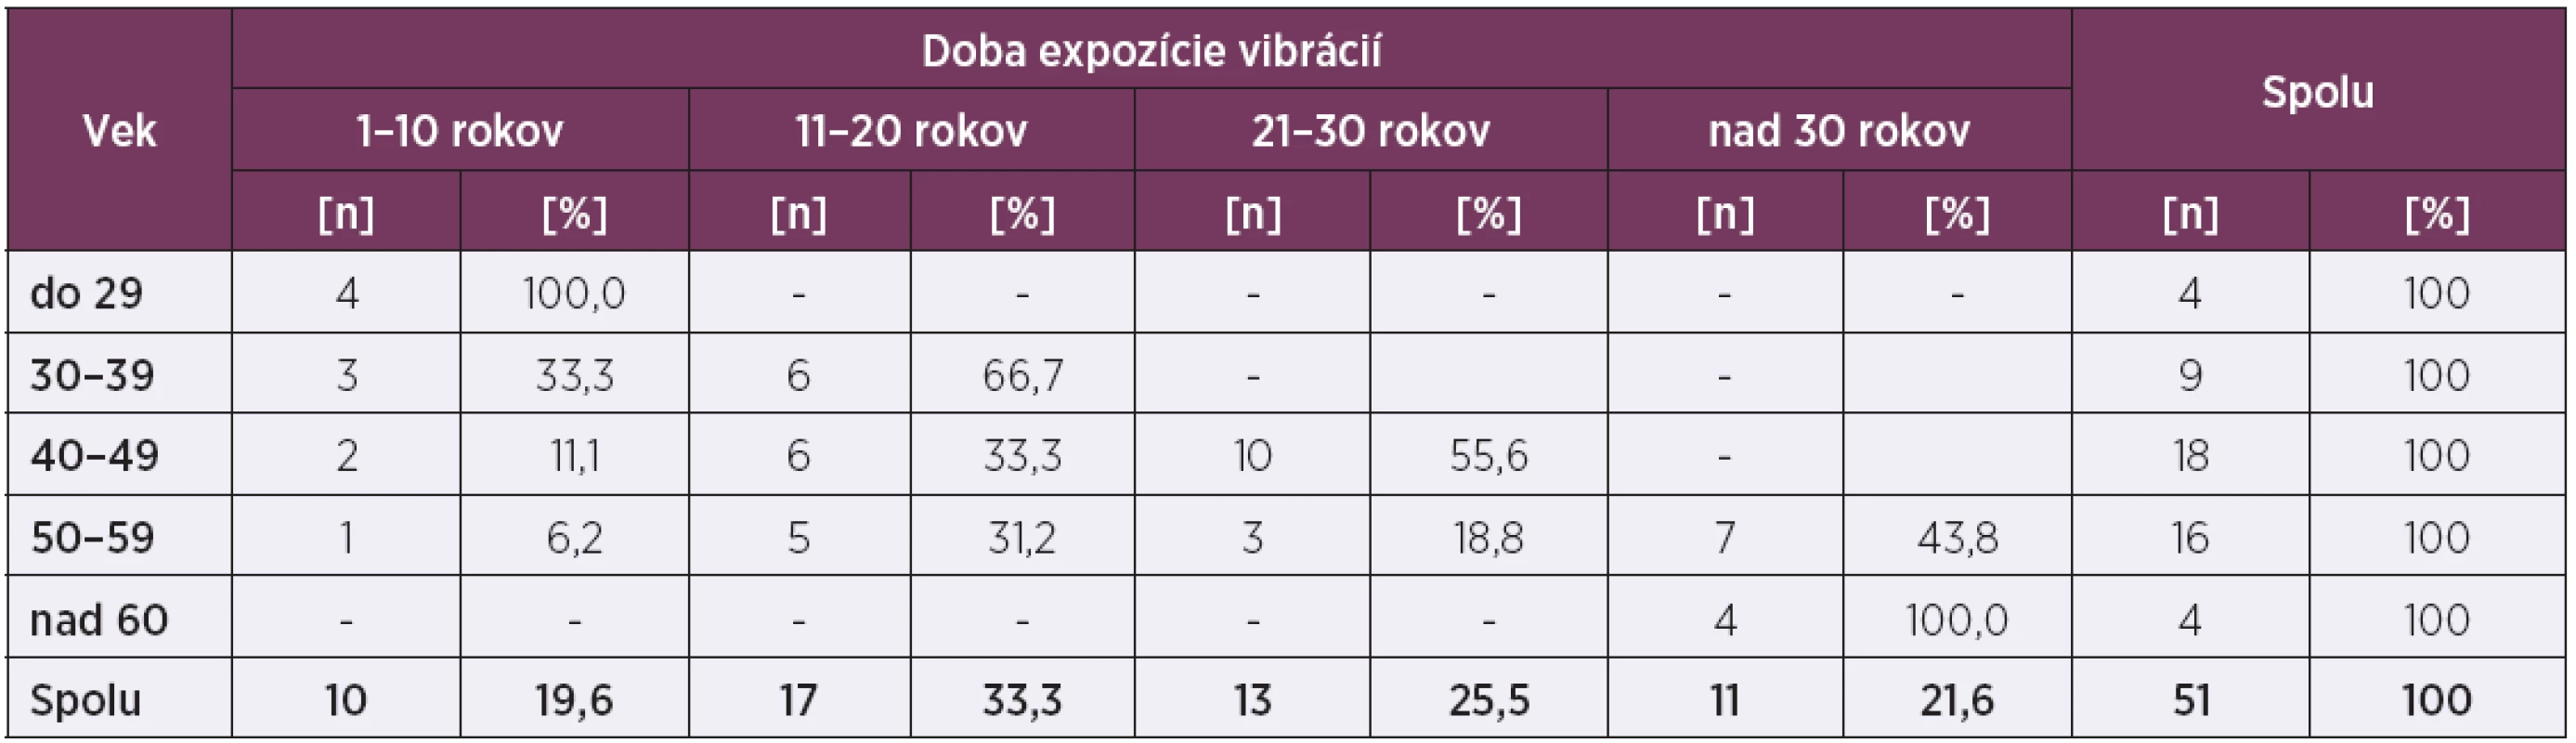 Doba expozície vibrácií zamestnancov (n = 51)